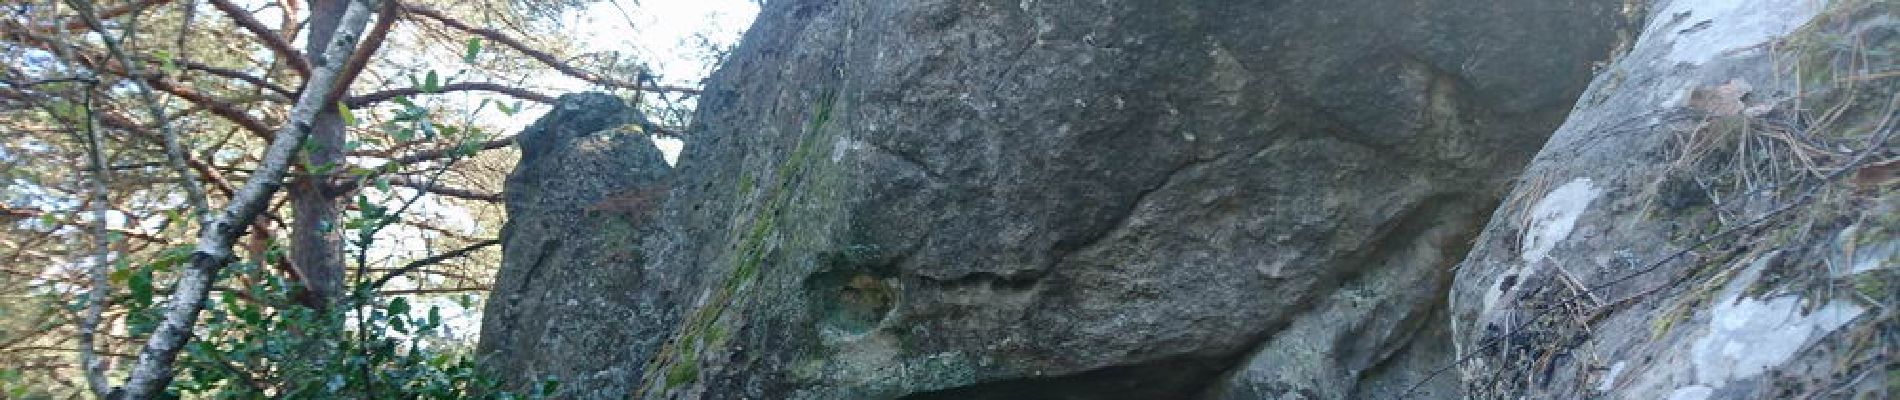 Point of interest Fontainebleau - Un drôle de monstre préhistorique. Dans la montée hors piste - Photo